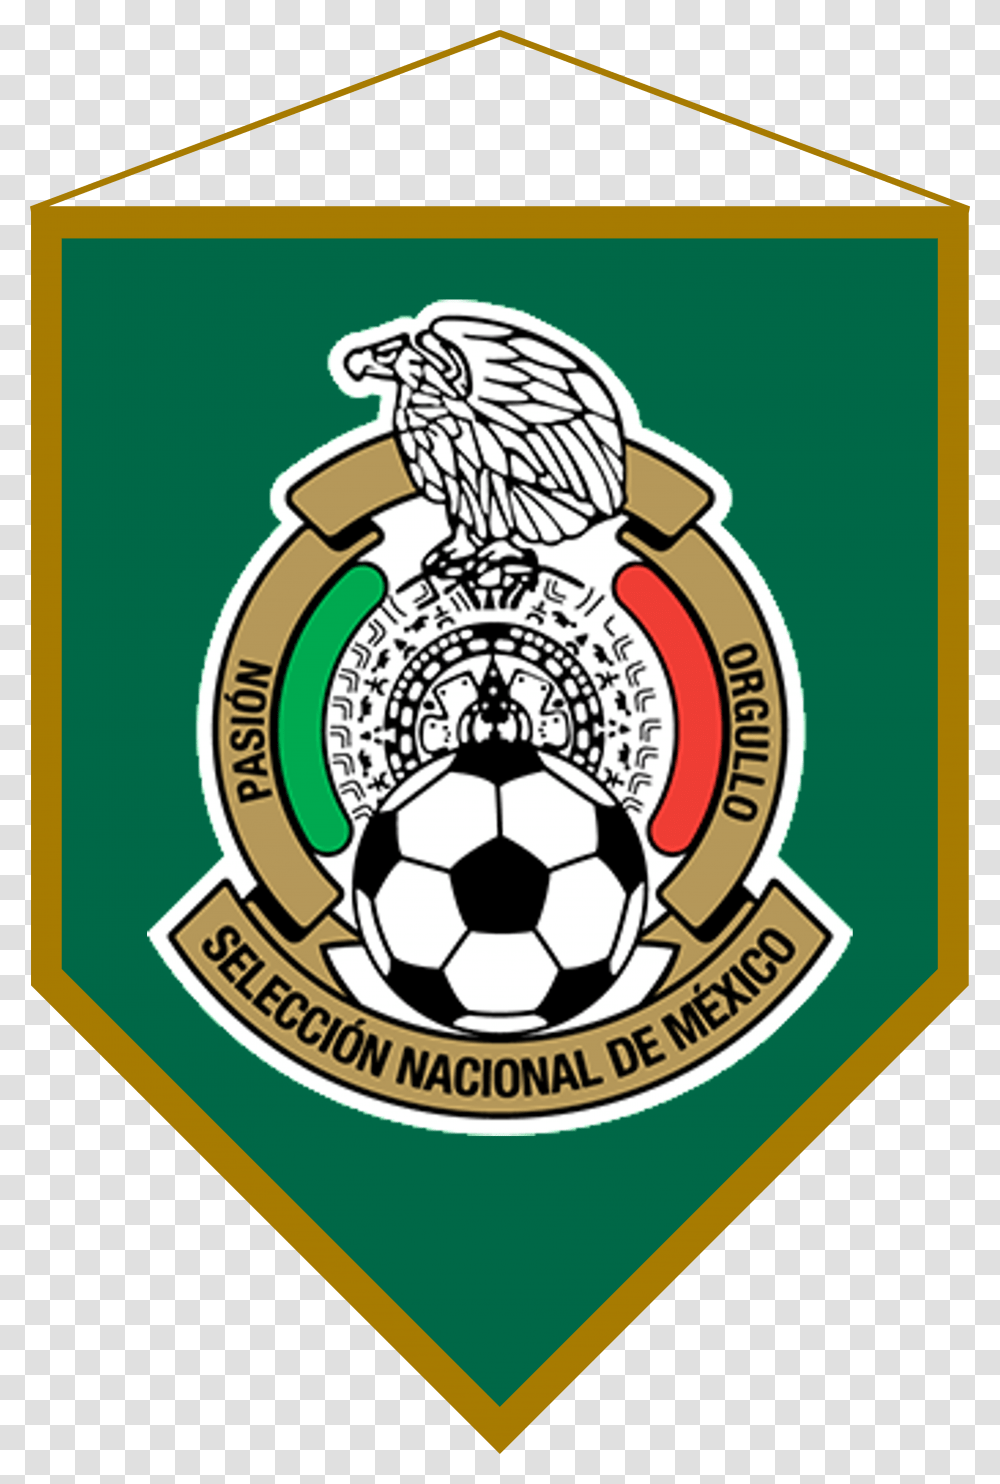 Logo Bandern Mxico Mexico National Team Flag Transparent Png